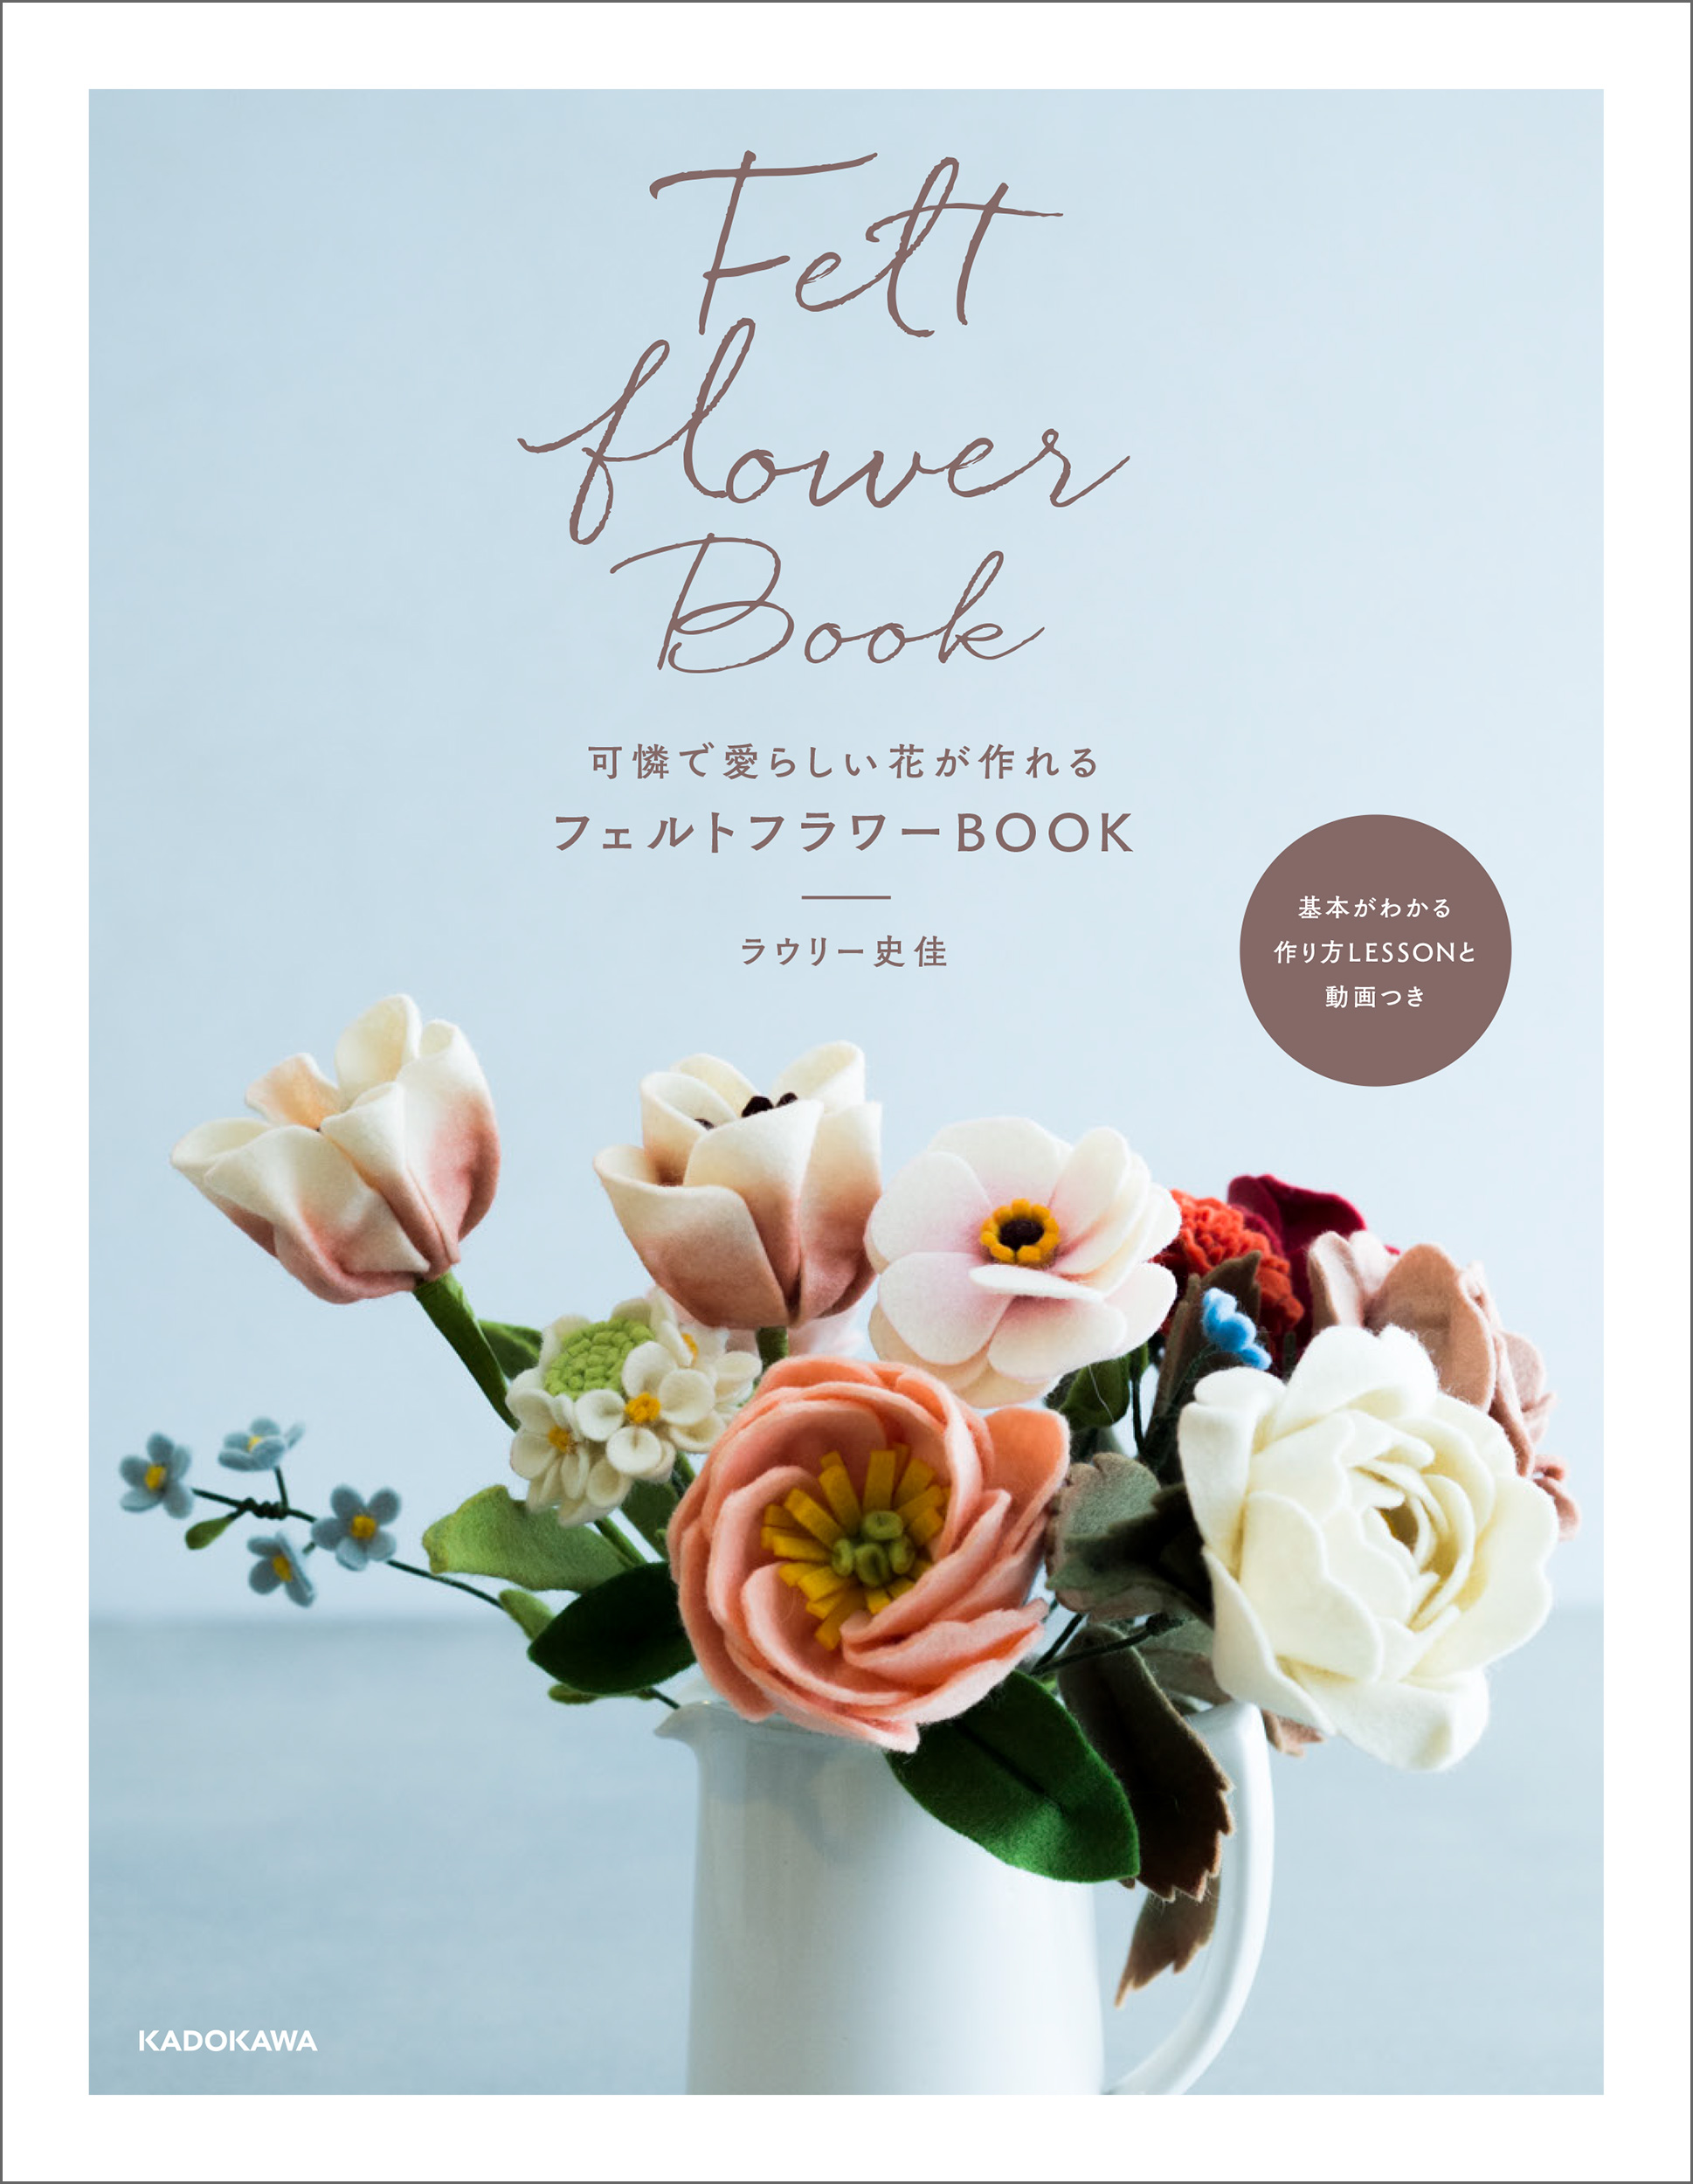 まるで本物のような美しいお花が作れます 可憐で愛らしい花が作れる フェルトフラワーbook 発売 株式会社kadokawaのプレスリリース